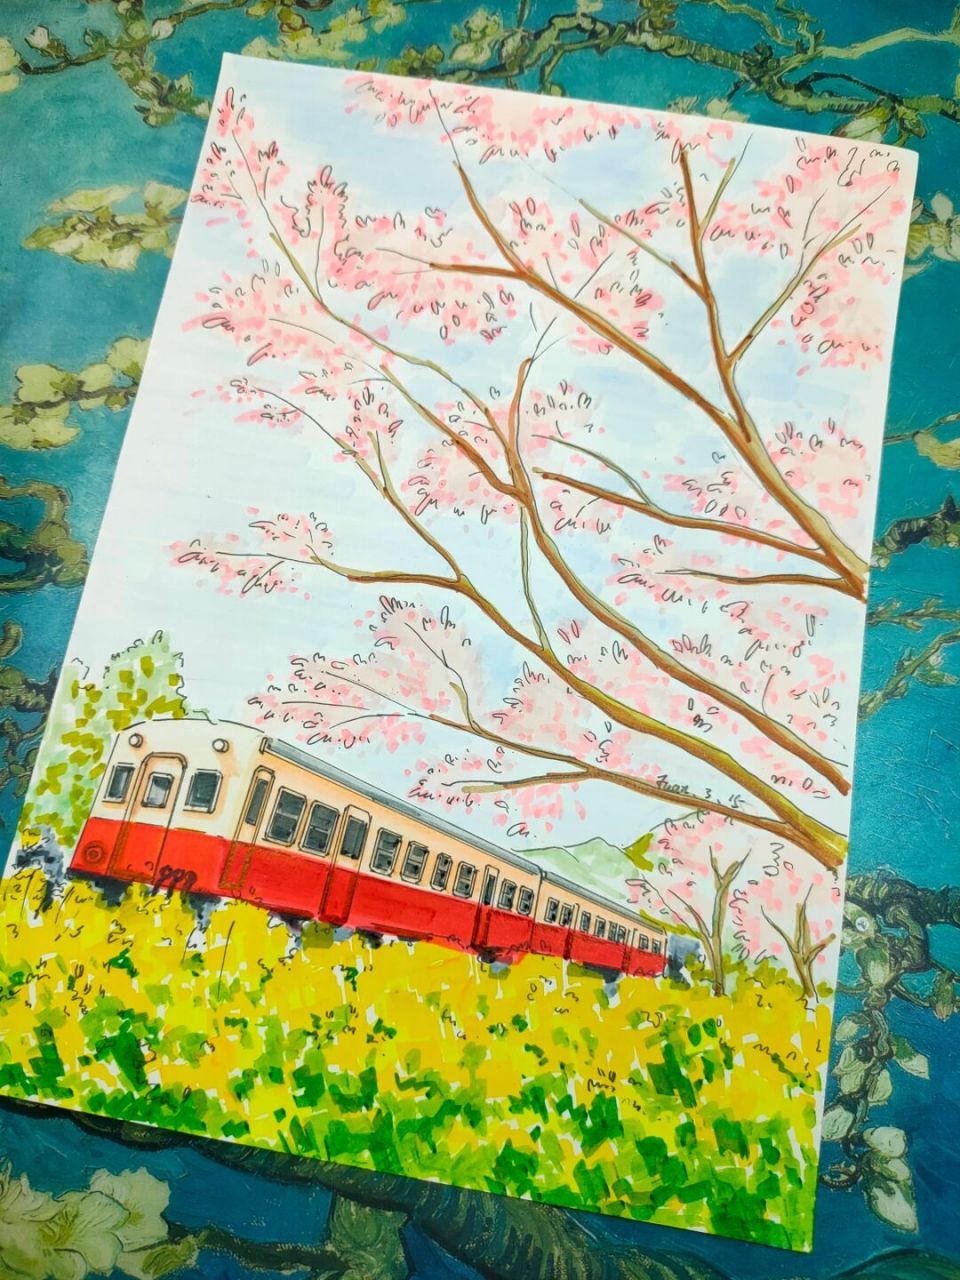 马克笔风景画《开往春天的火车》色稿 马克笔风景画《开往春天的火车